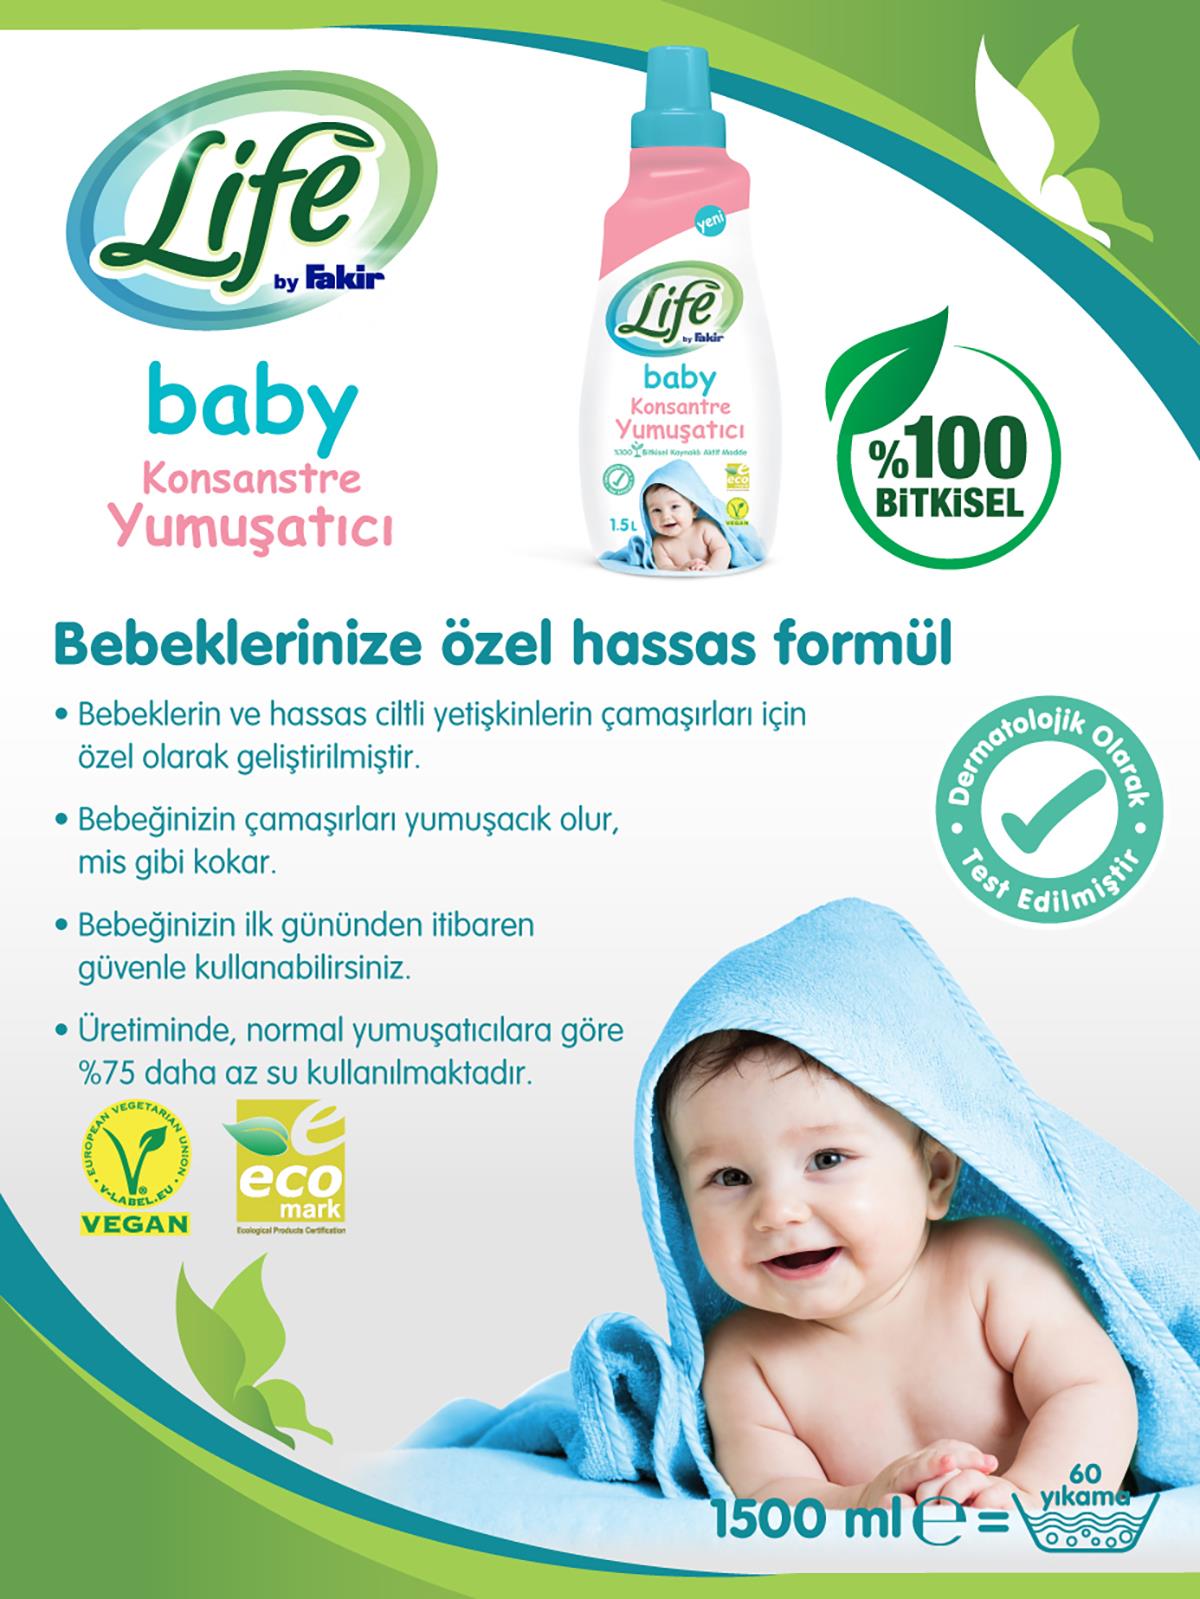 Life by Fakir %100 Bitkisel Bazlı Konsantre Bebek Çamaşır Yumuşatıcısı 1500 ml 60 yıkama